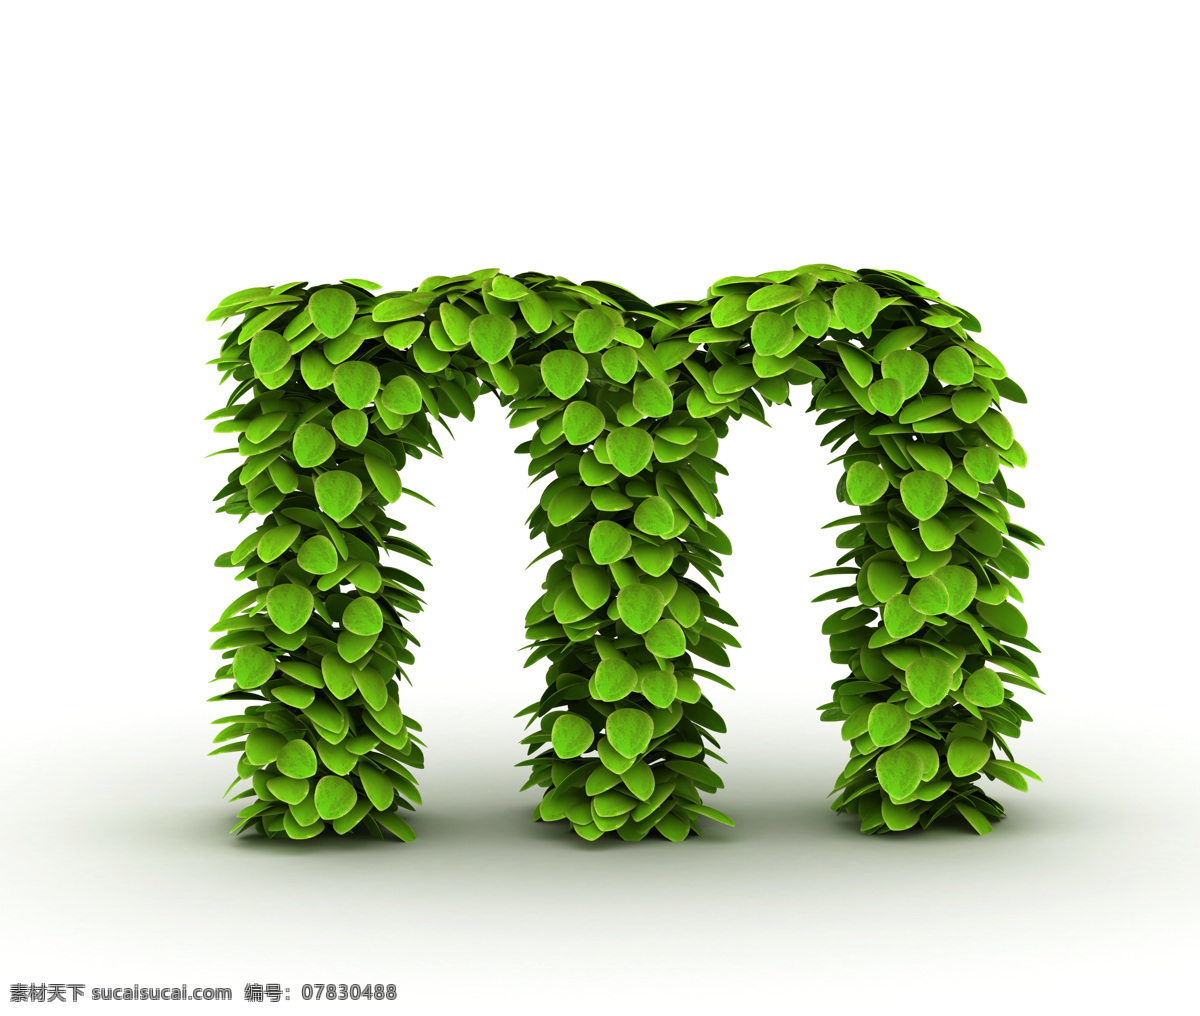 字母 m 设计素材 英文 艺术字 字体设计 叶子 绿叶 绿色 环保 立体字 书画文字 文化艺术 白色